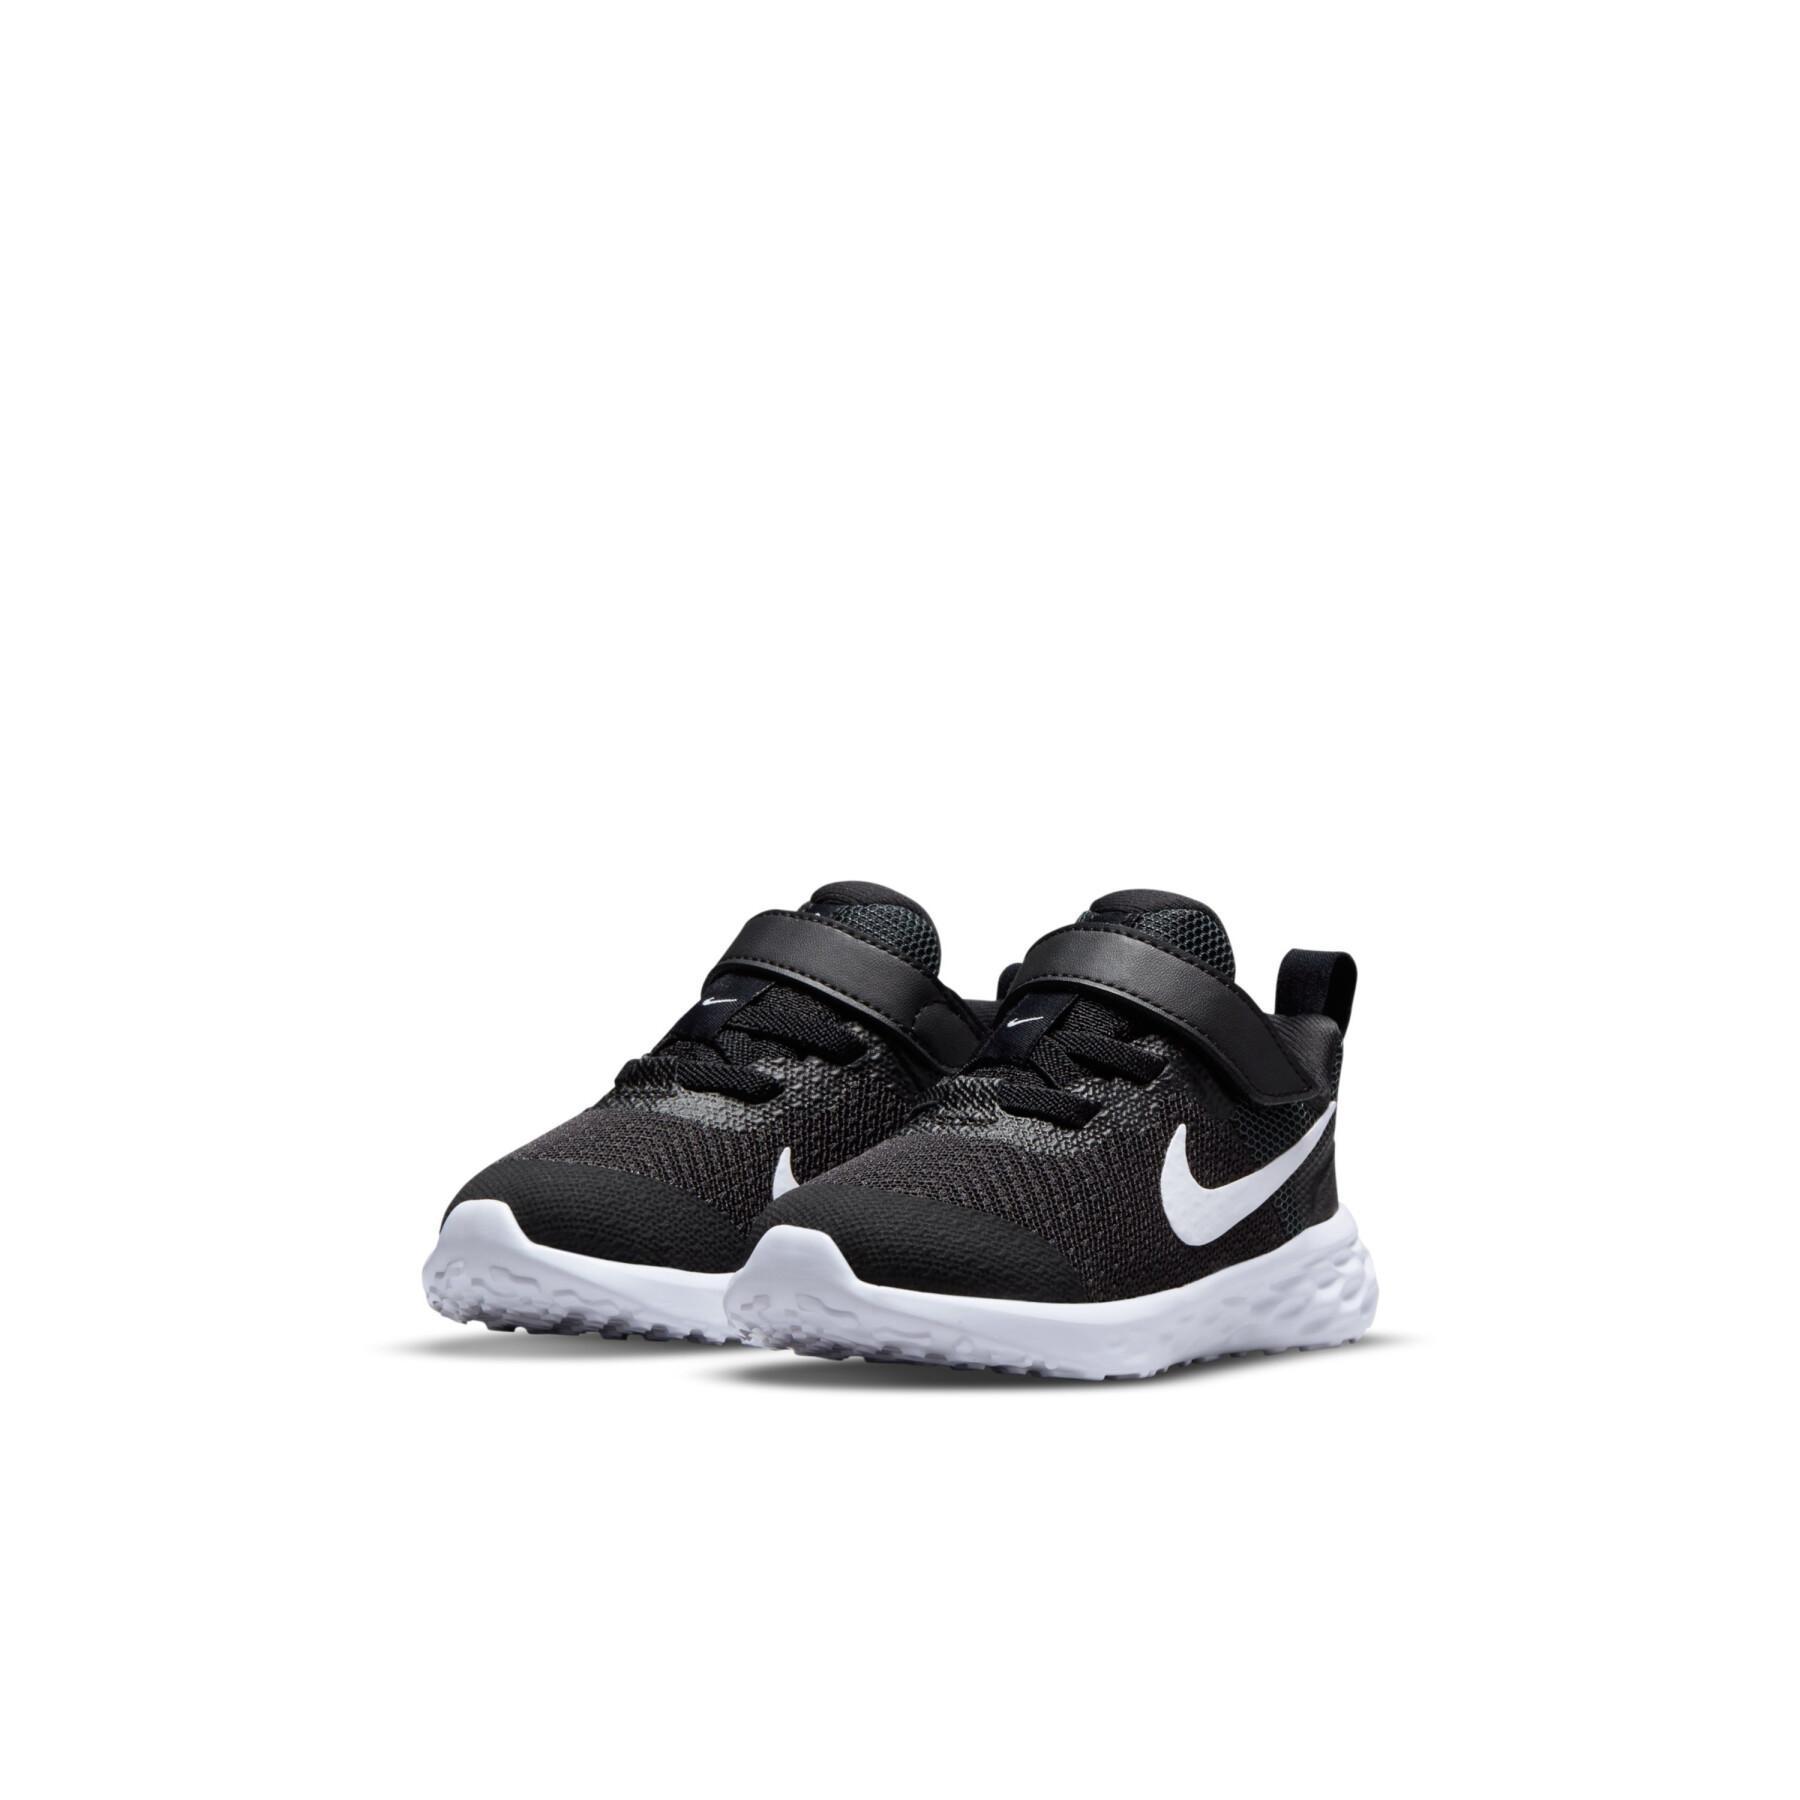 Zapatillas para bebés Nike Revolution 6